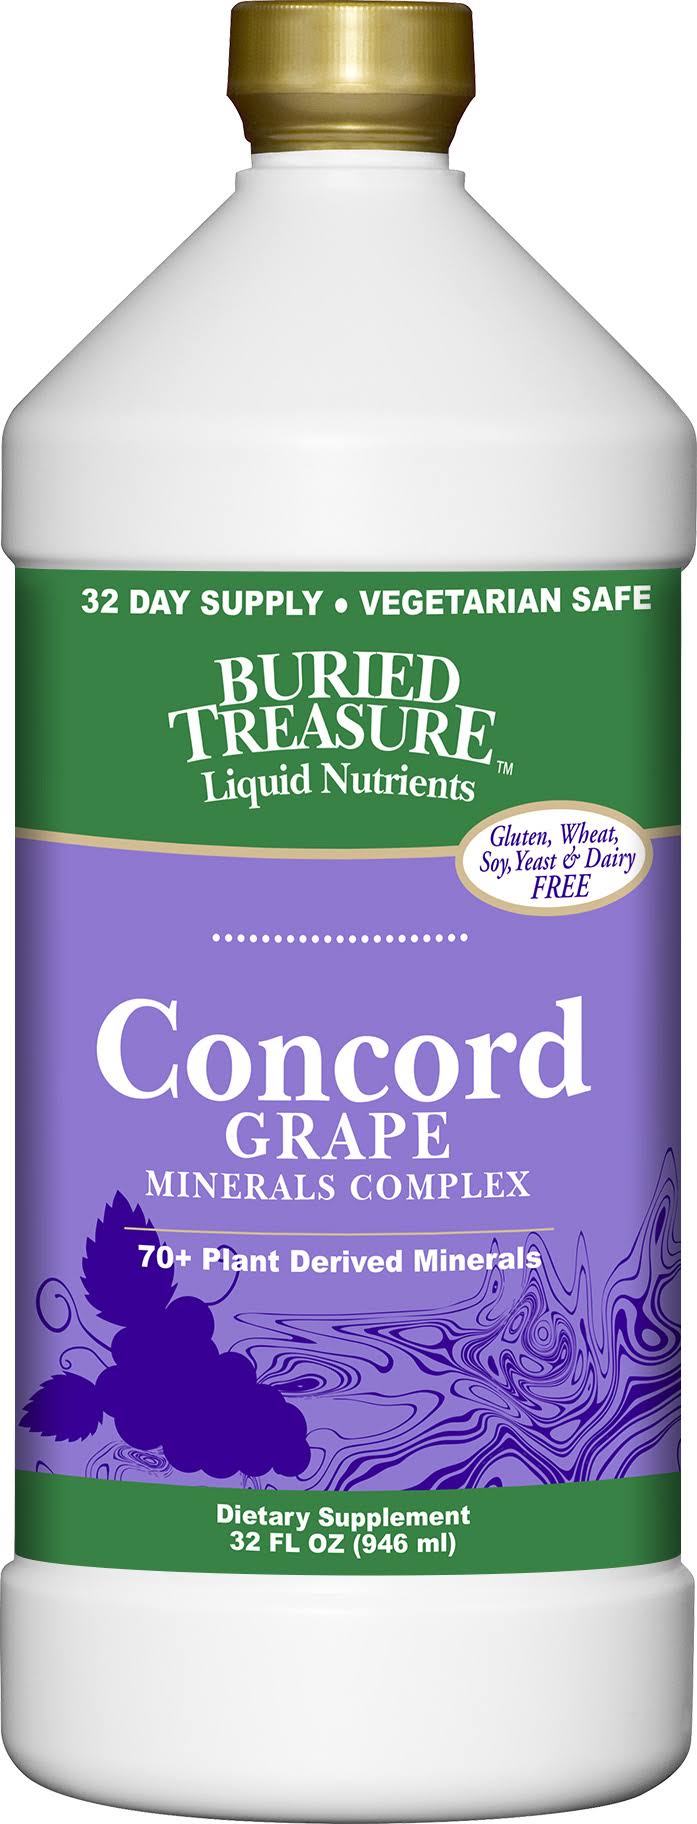 Buried Treasure 70 Plus Plant Derived Minerals Concord - Grape, 32oz